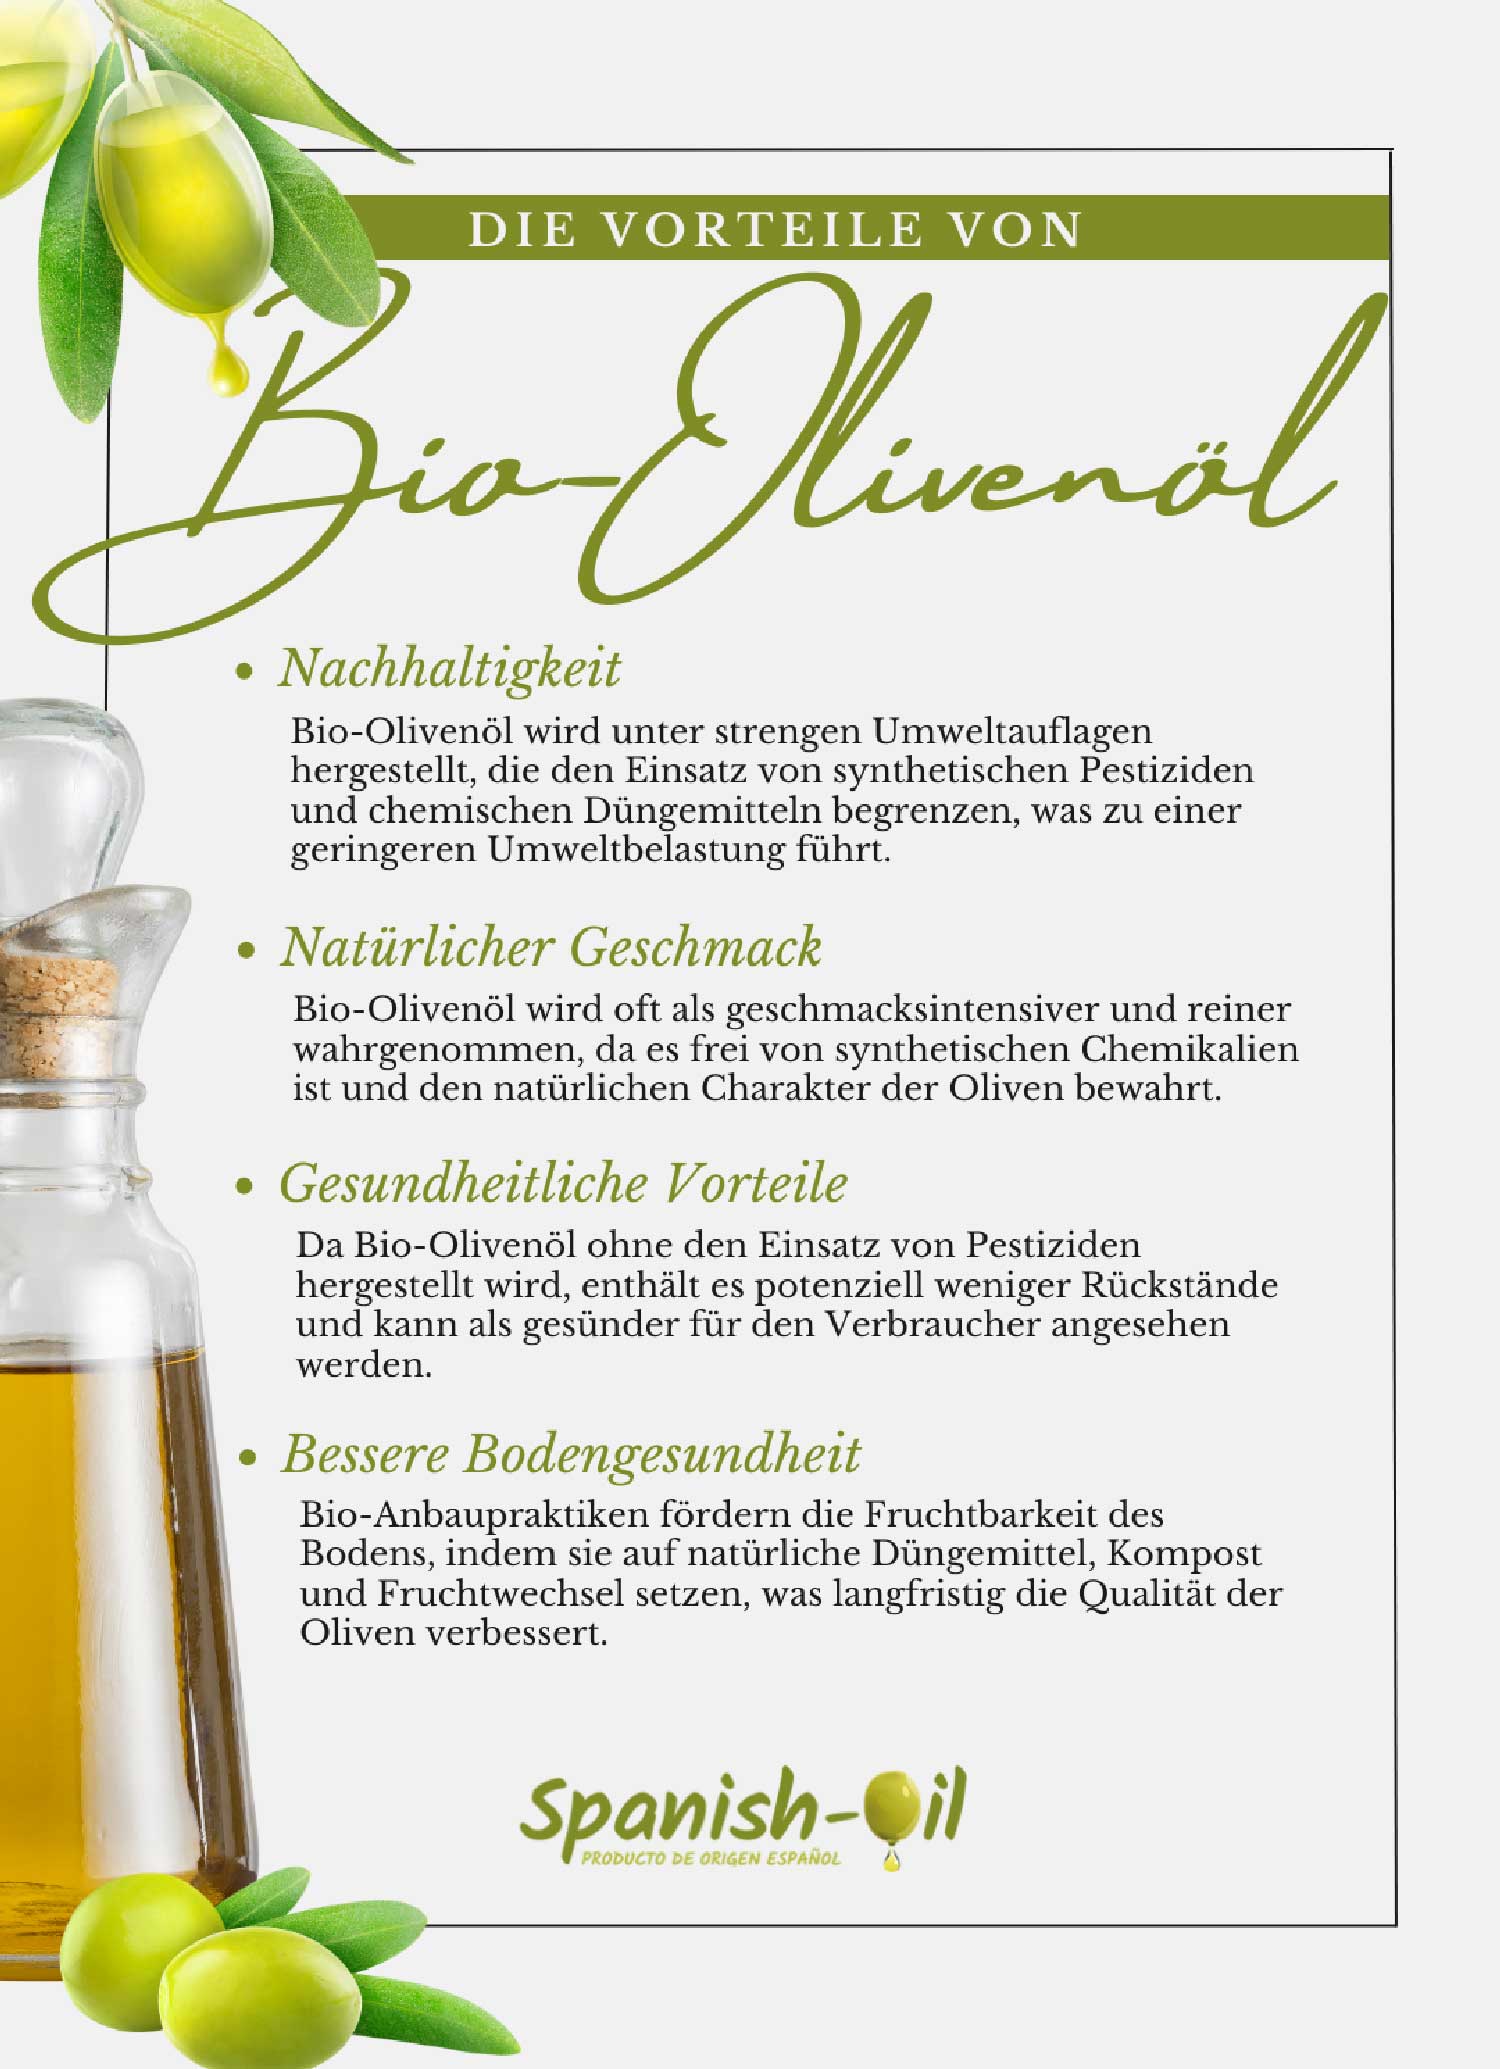 Die Vorteile von Bio Olivenöl auf einen Blick